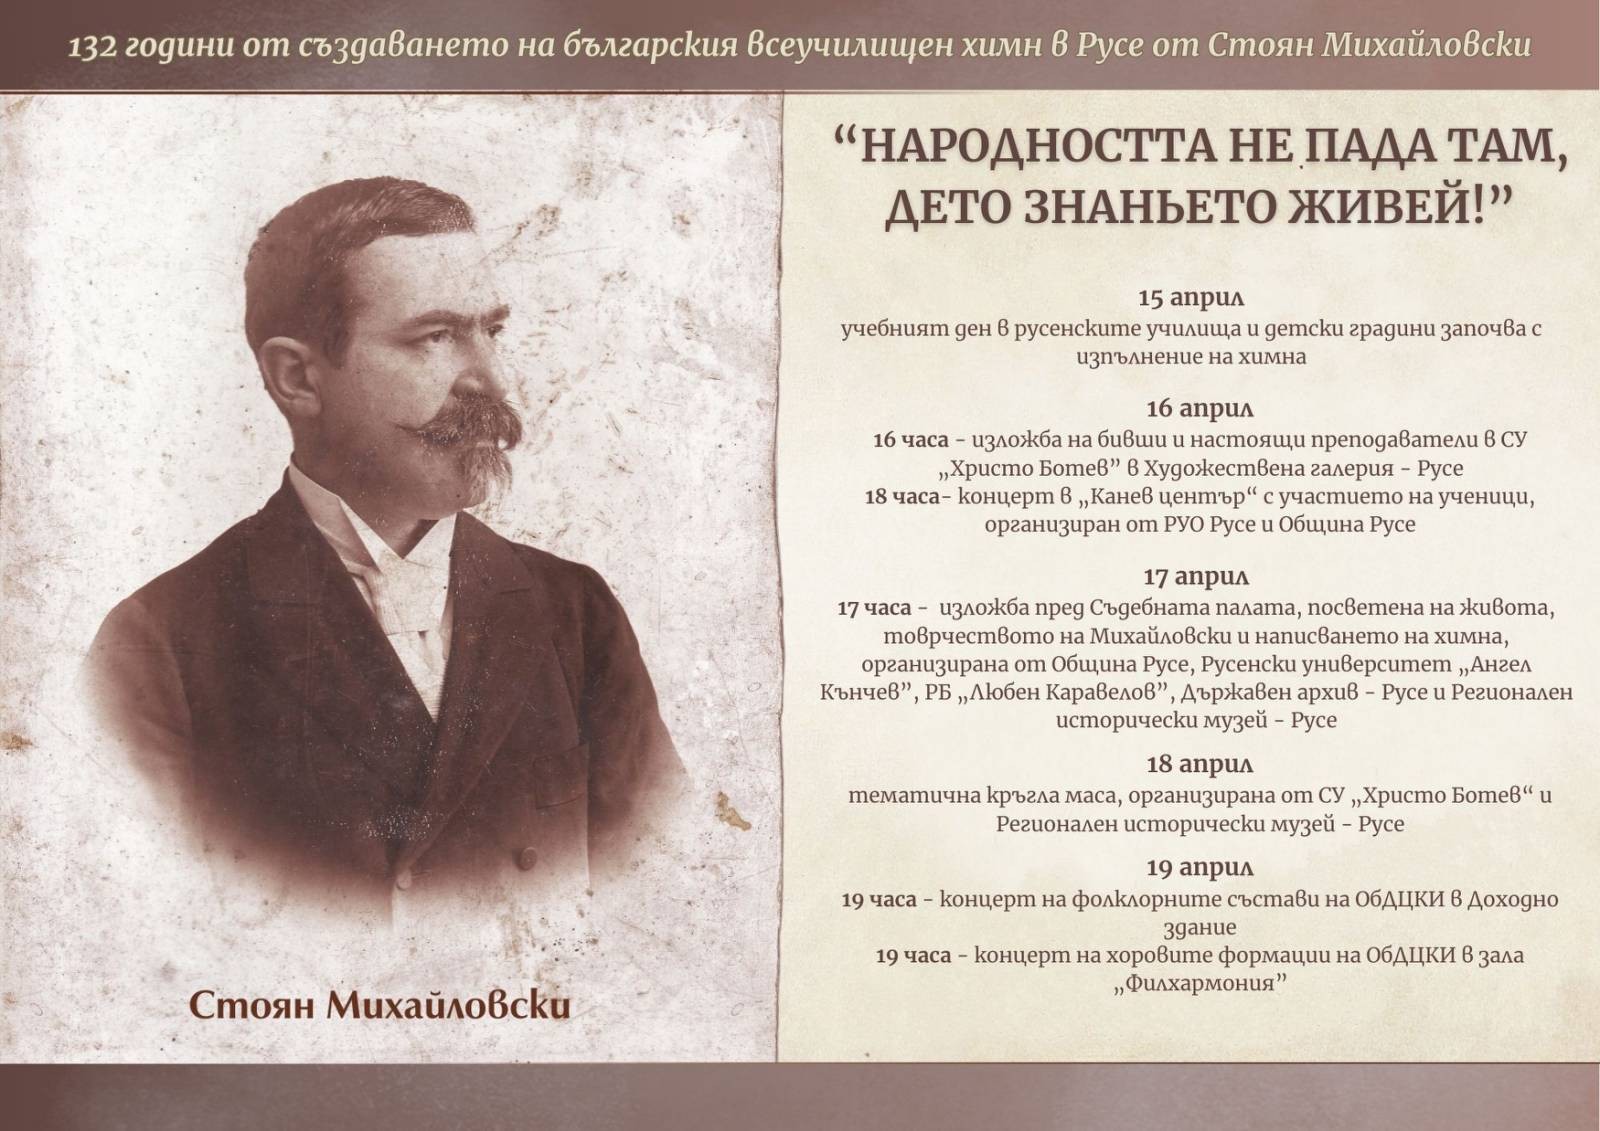 Русе празнува 15 април – Деня на българския всеучилищен химн, написан в Мъжката гимназия от Стоян Михайловски
